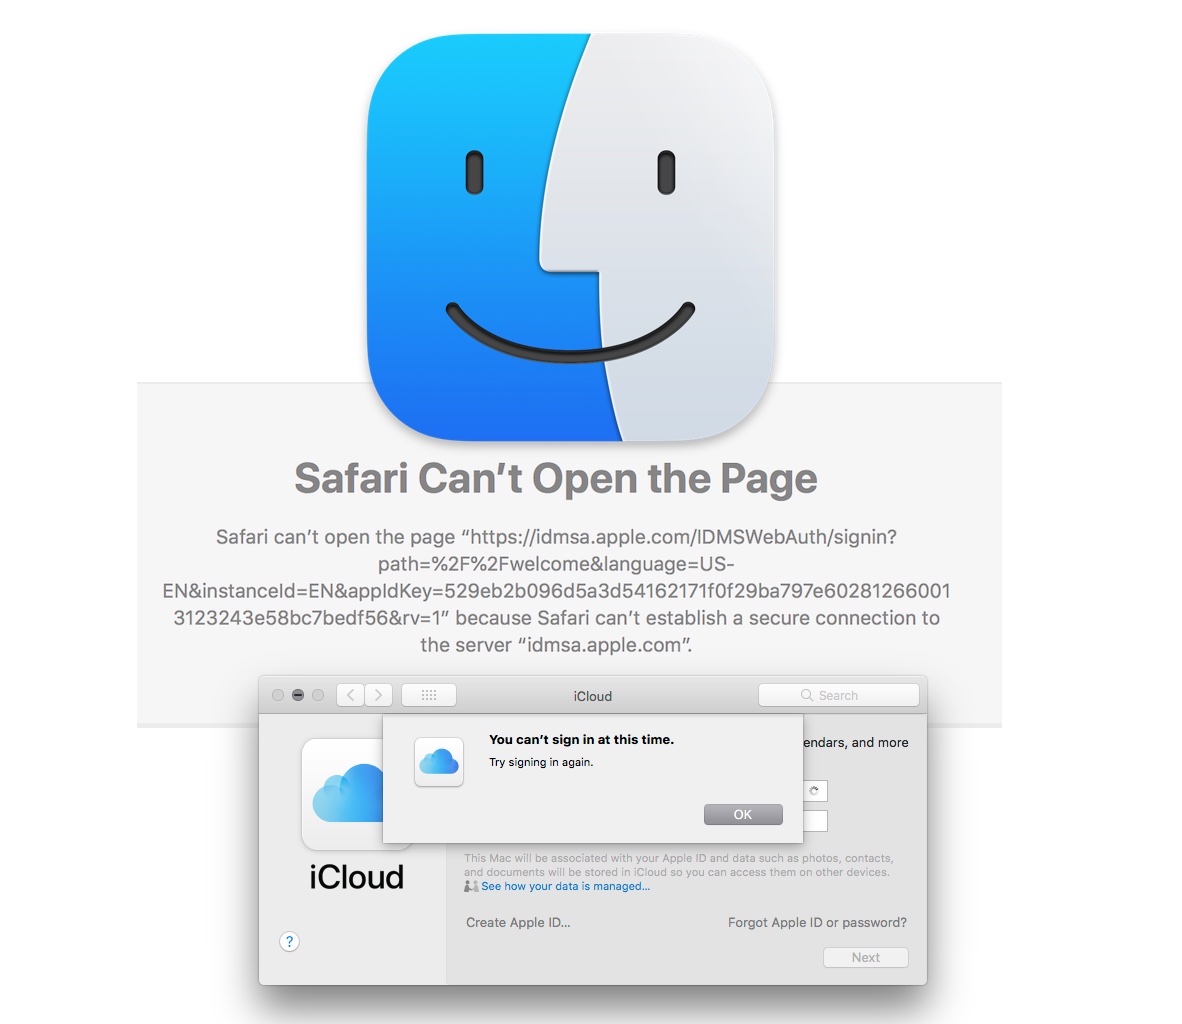 修复 Safari 无法建立安全连接错误、Apple ID 错误、iCloud 错误，在 MacOS High Sierra 和 Sierra 中